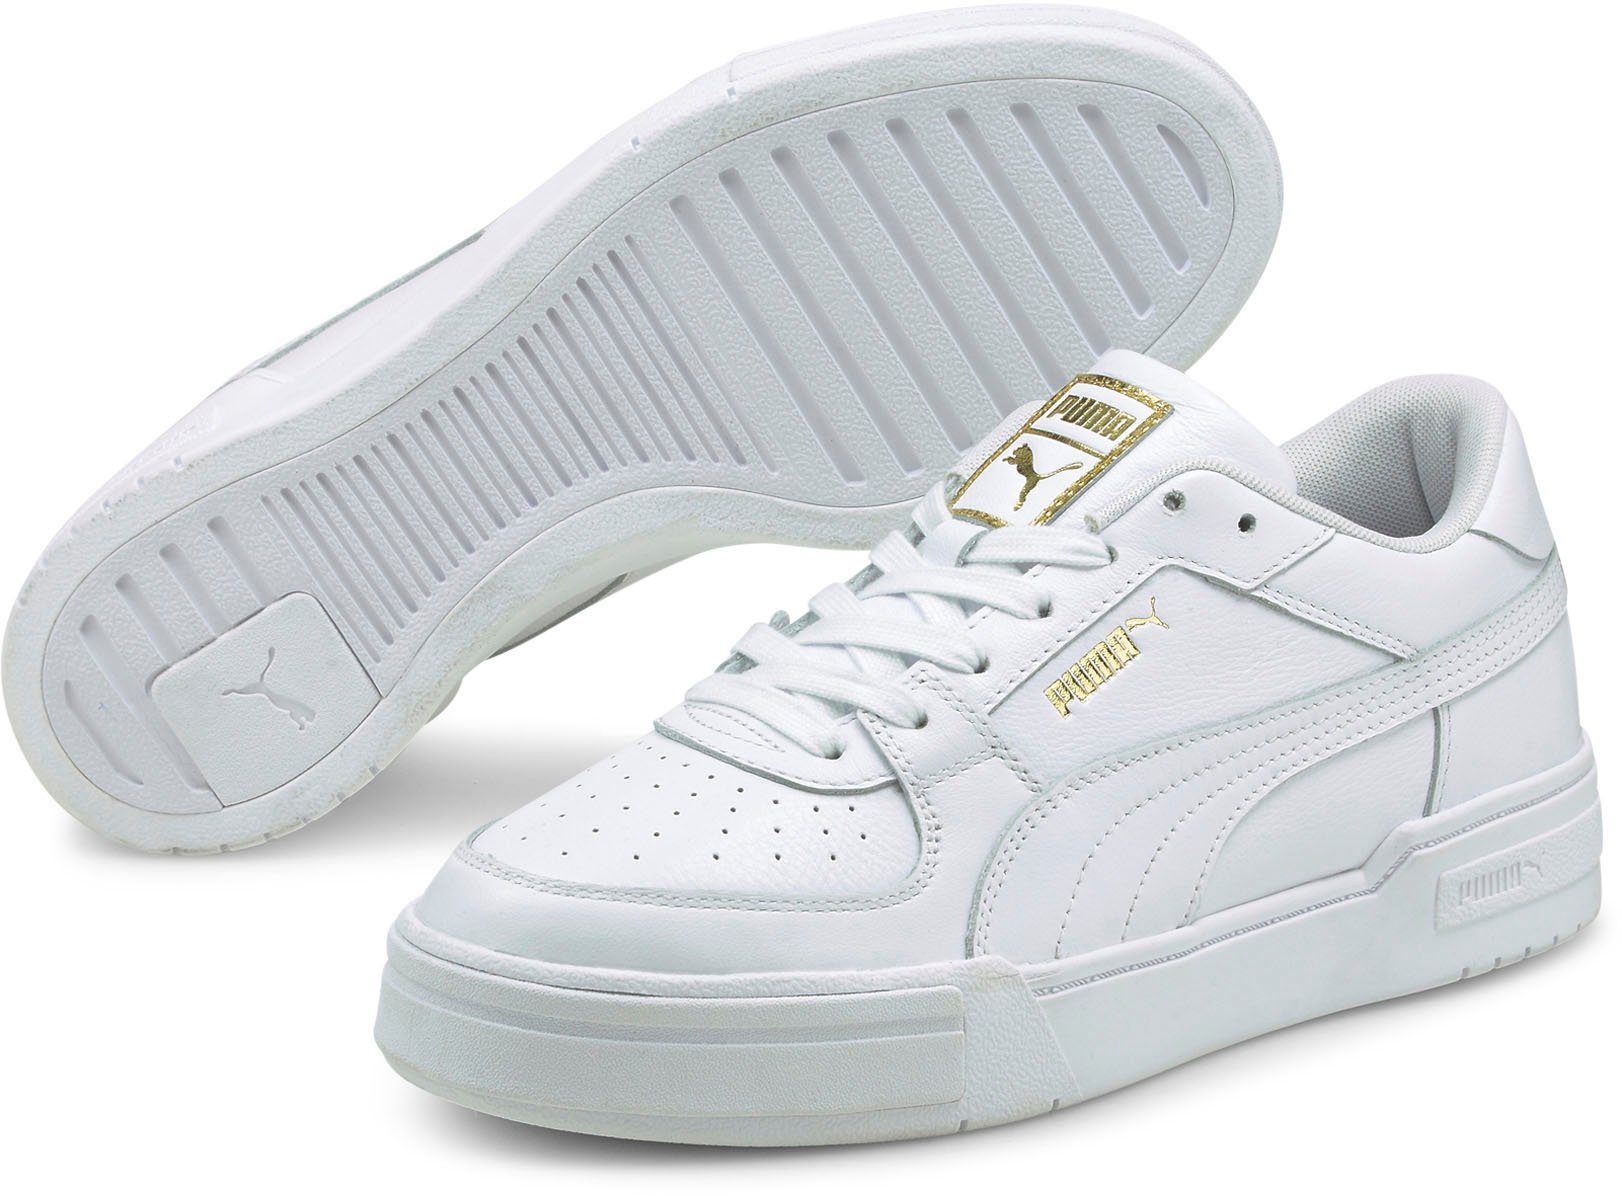 PUMA »CA Pro Classic« Sneaker online kaufen | OTTO